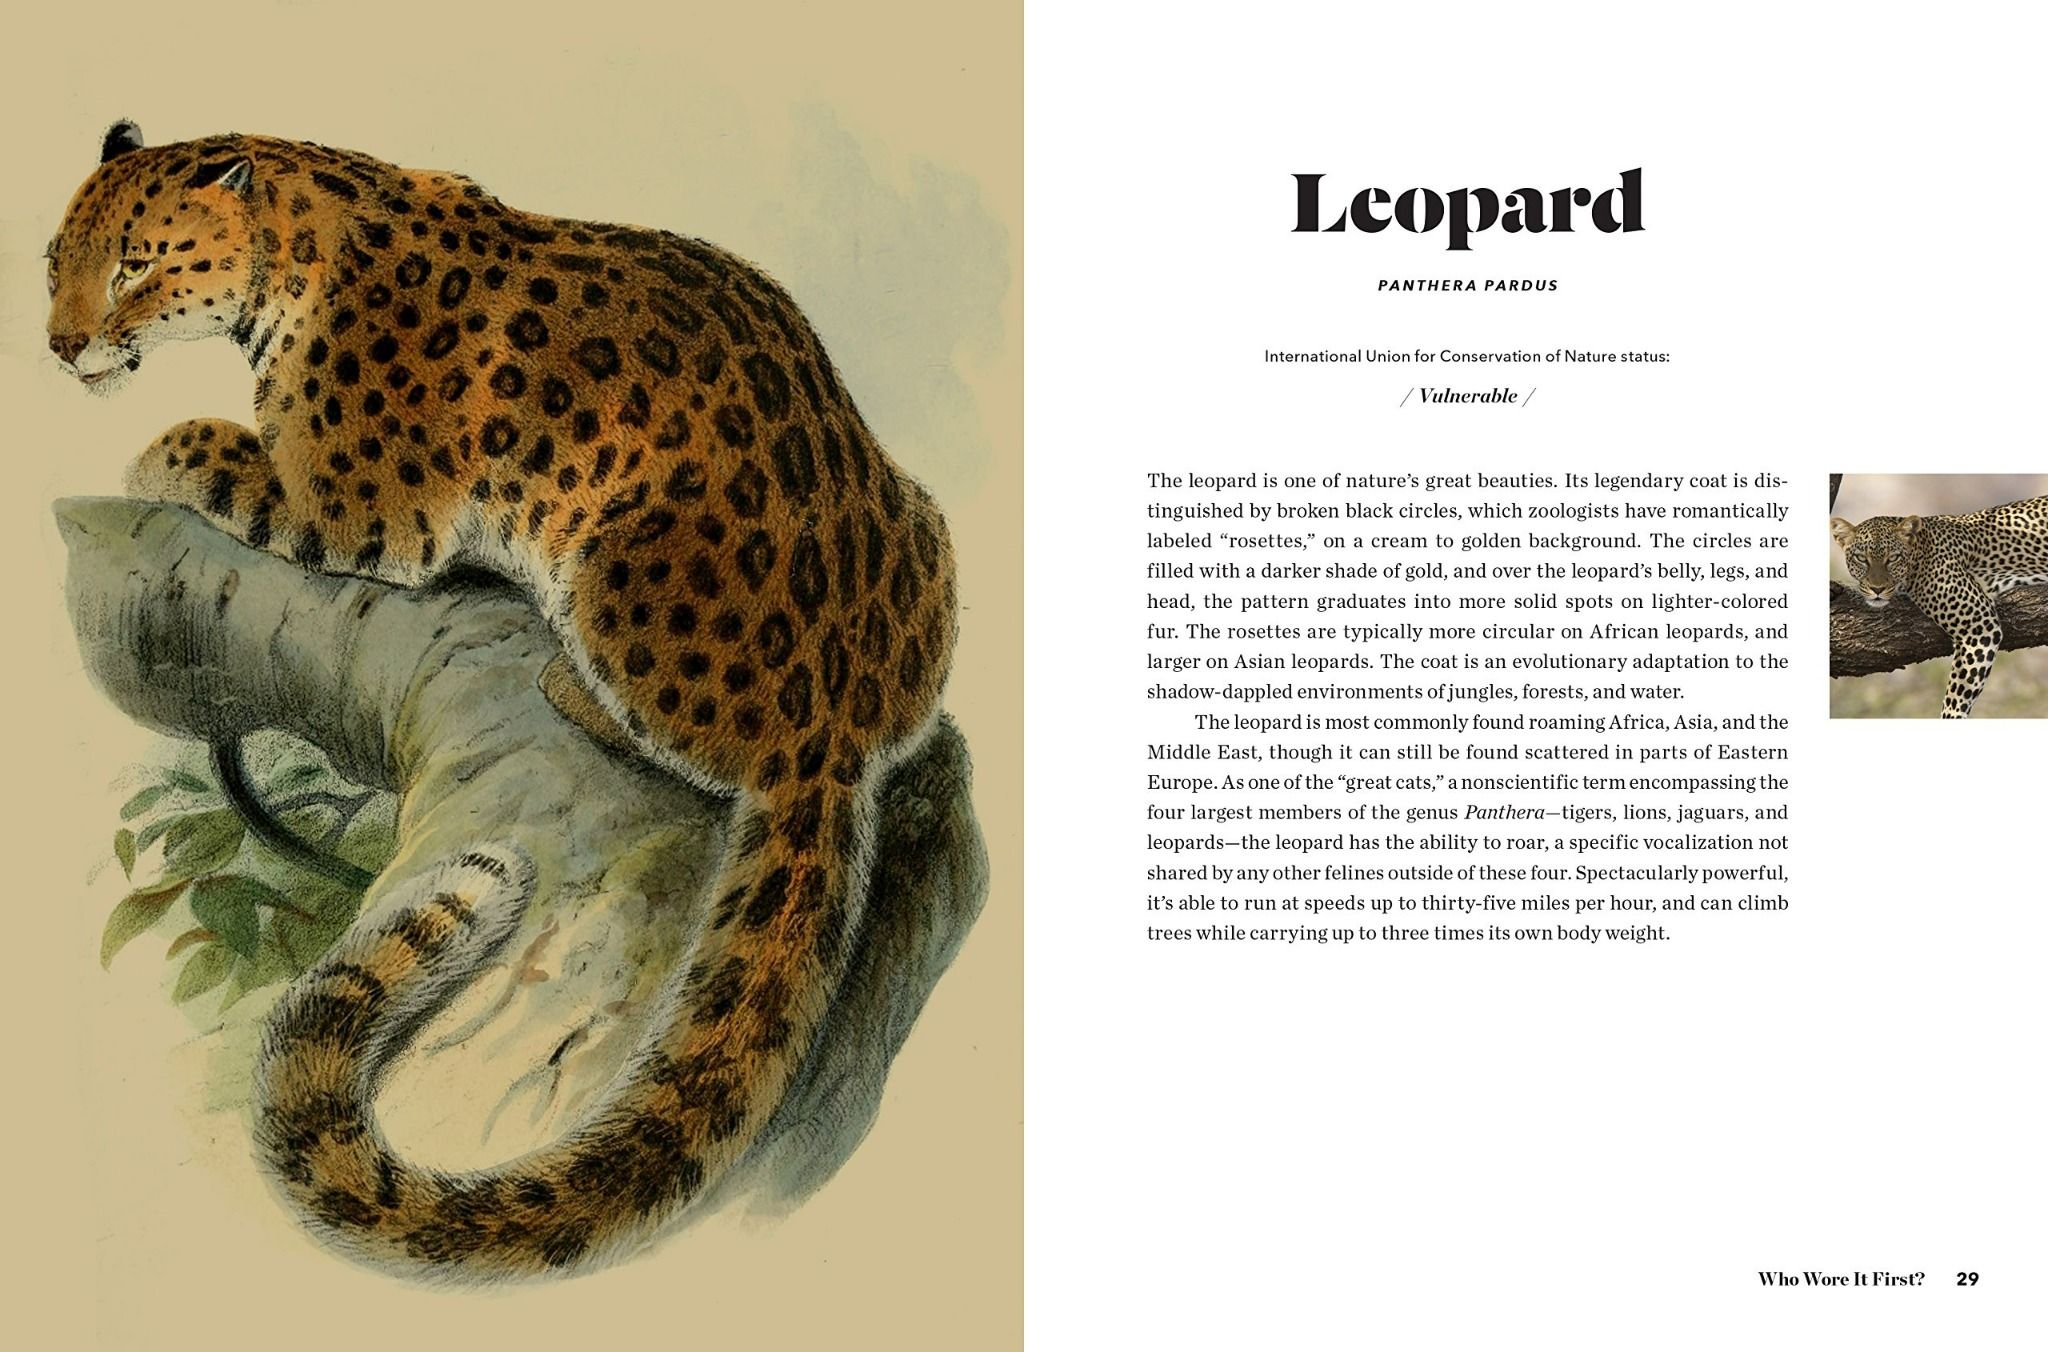  Fierce : The History of Leopard Print_Jo Weldon_9780062692955_Harper Design 